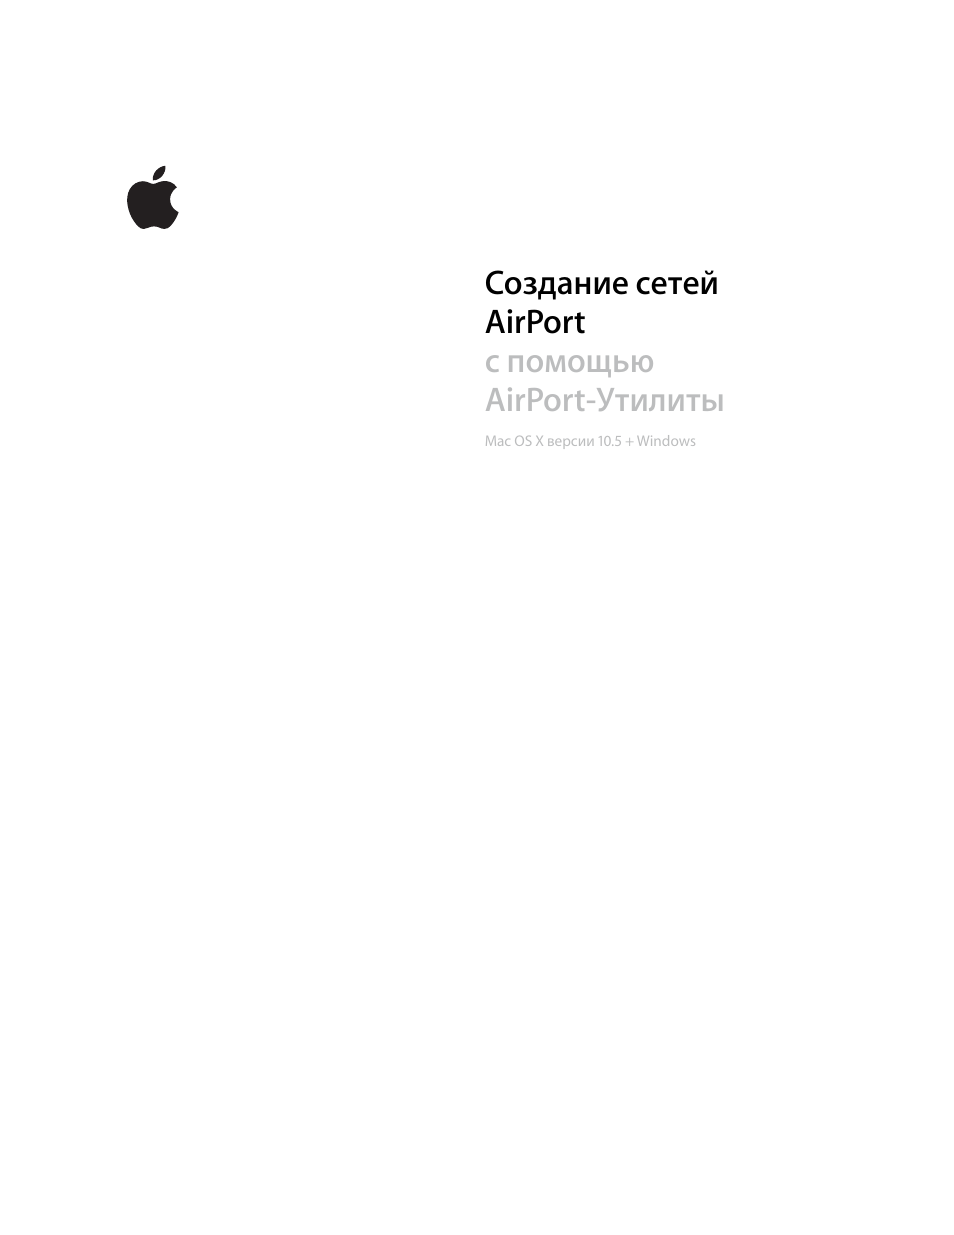 Инструкция по эксплуатации Apple AirPort : Mac OS X версии 10.5 + Windows | 82 страницы